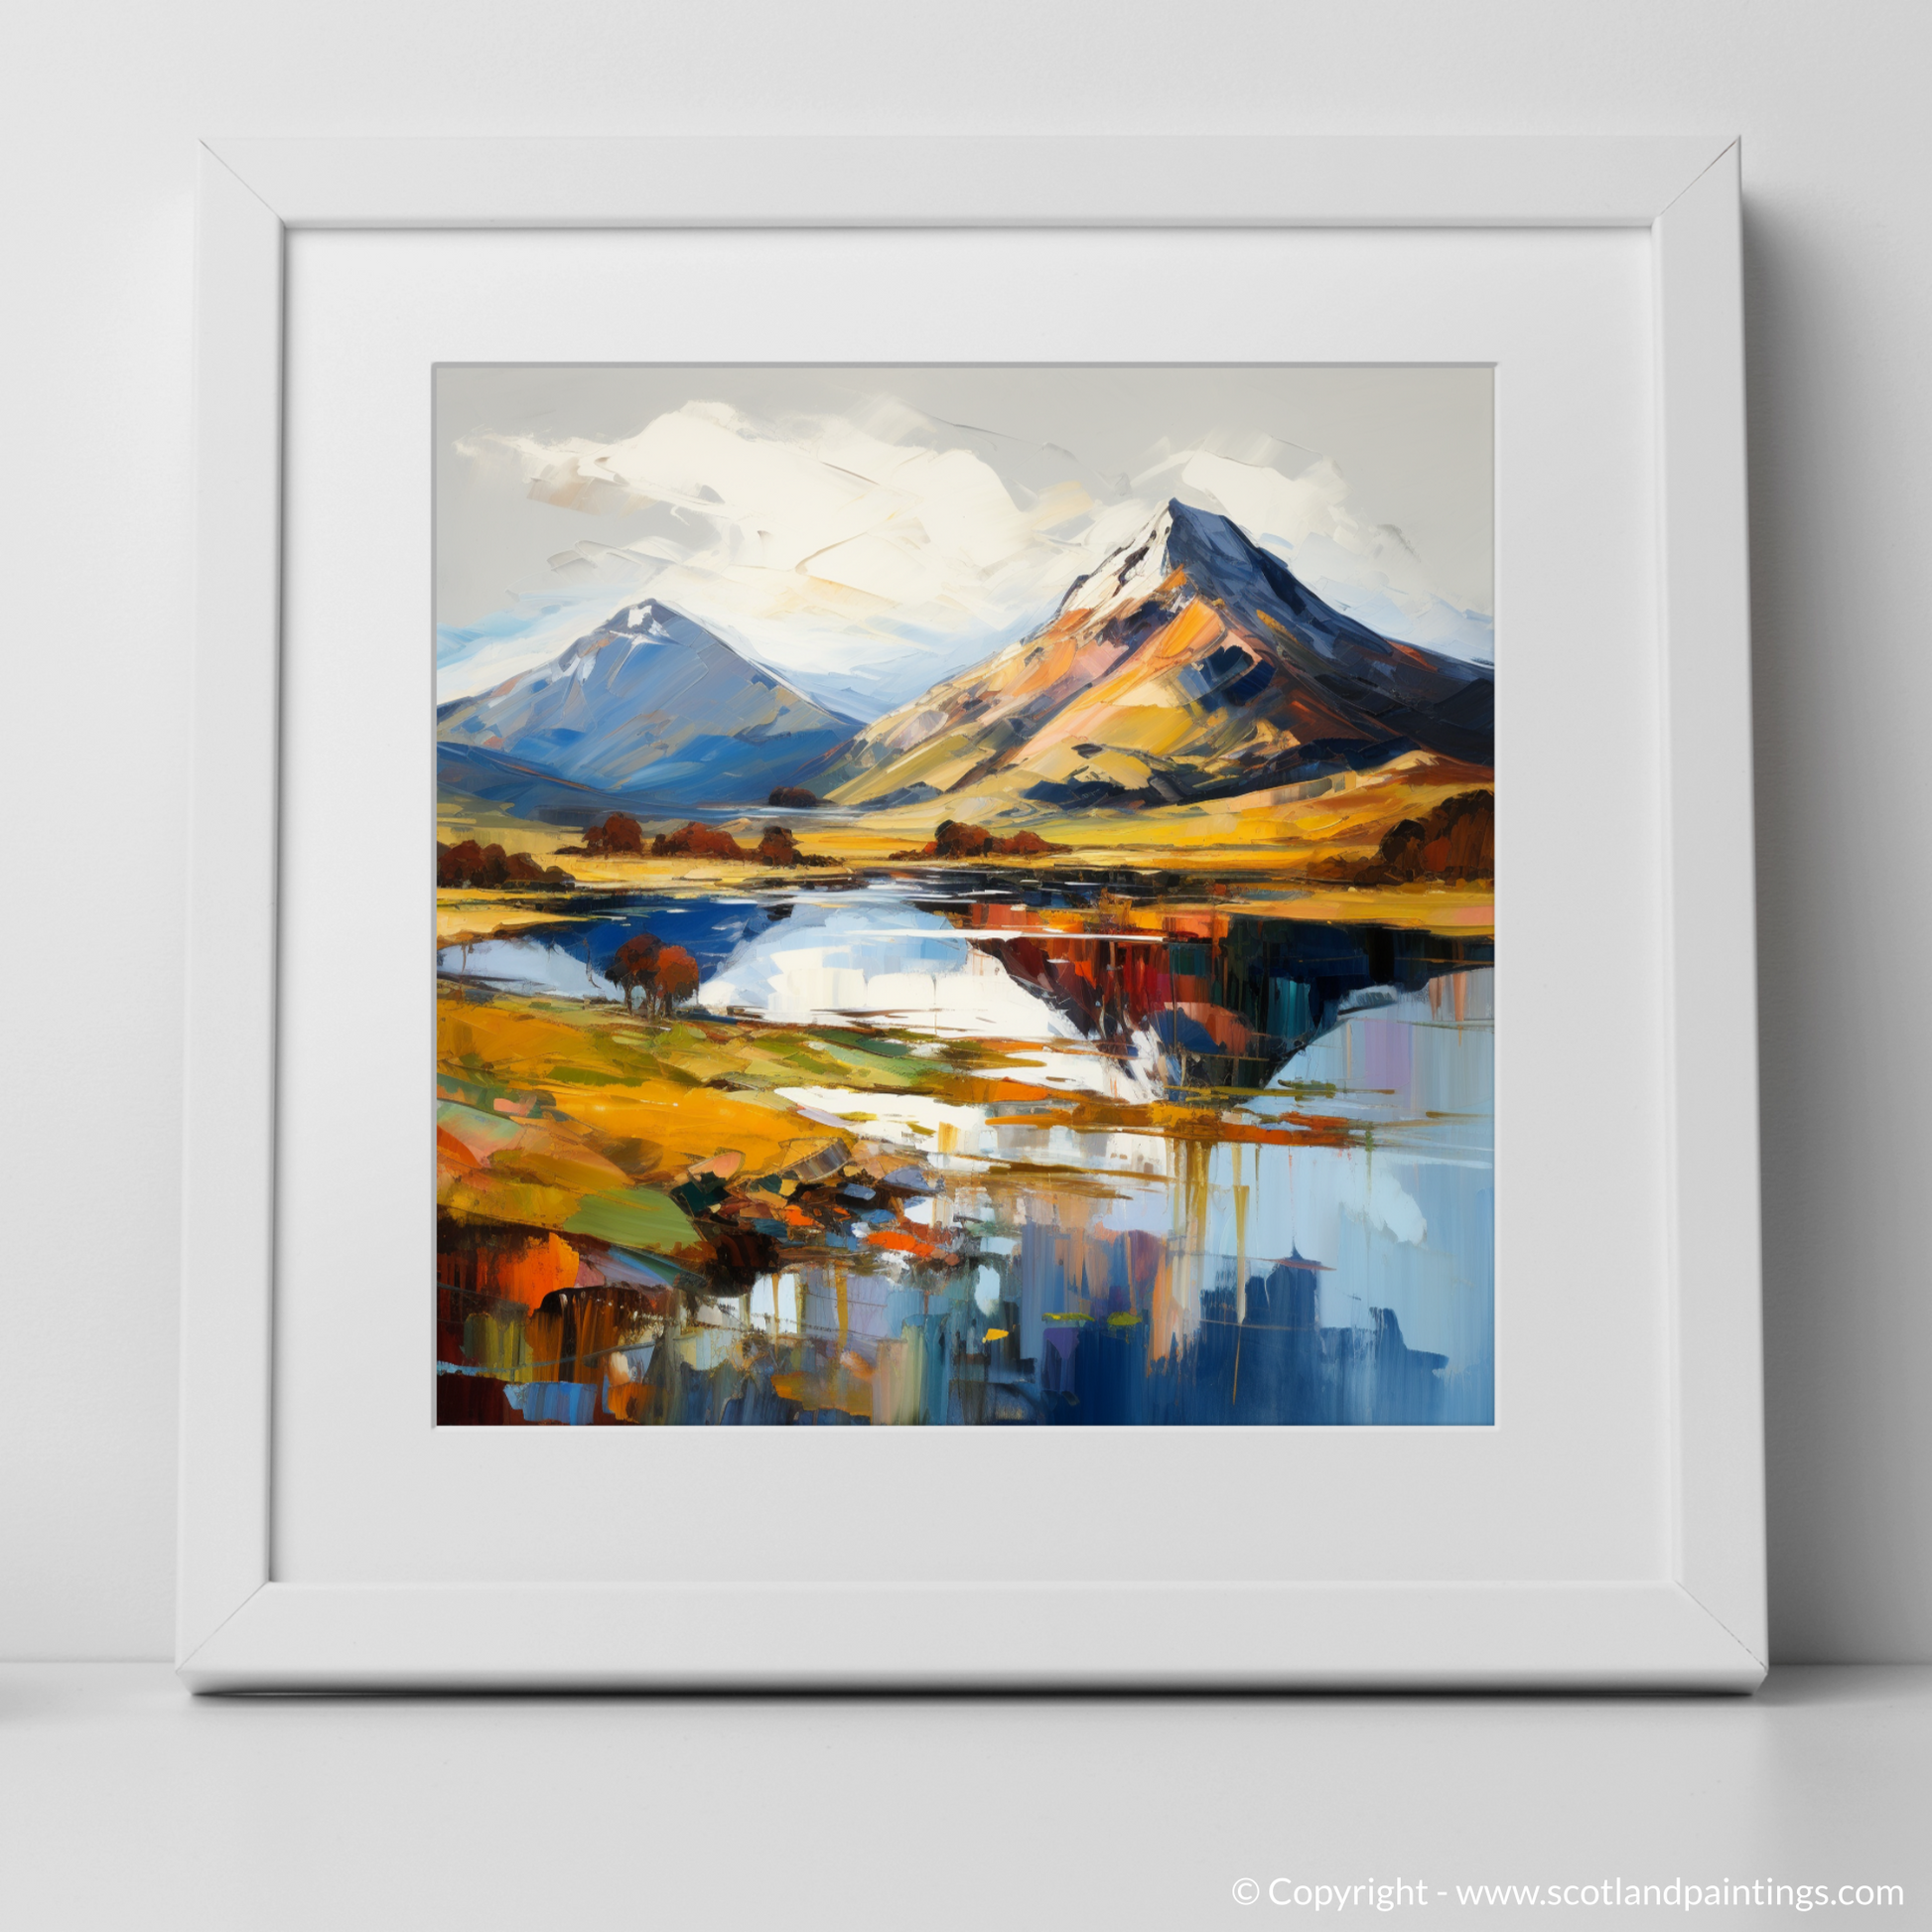 Art Print of Ben Vorlich (Loch Lomond) with a white frame